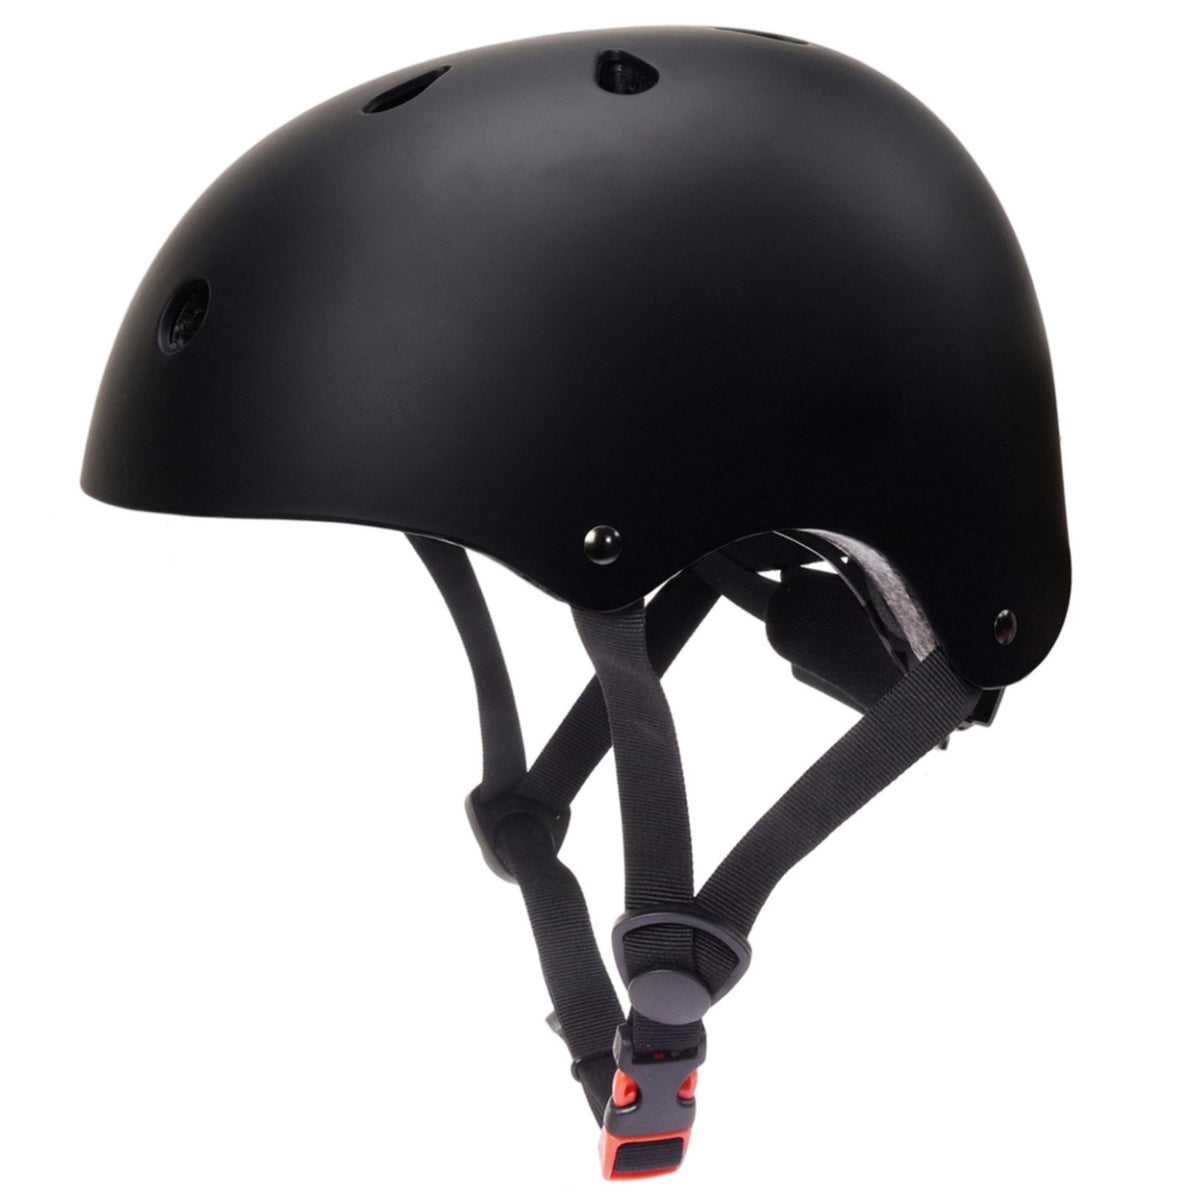 GLAF Kids Bike Helmets in Black In Stock USA